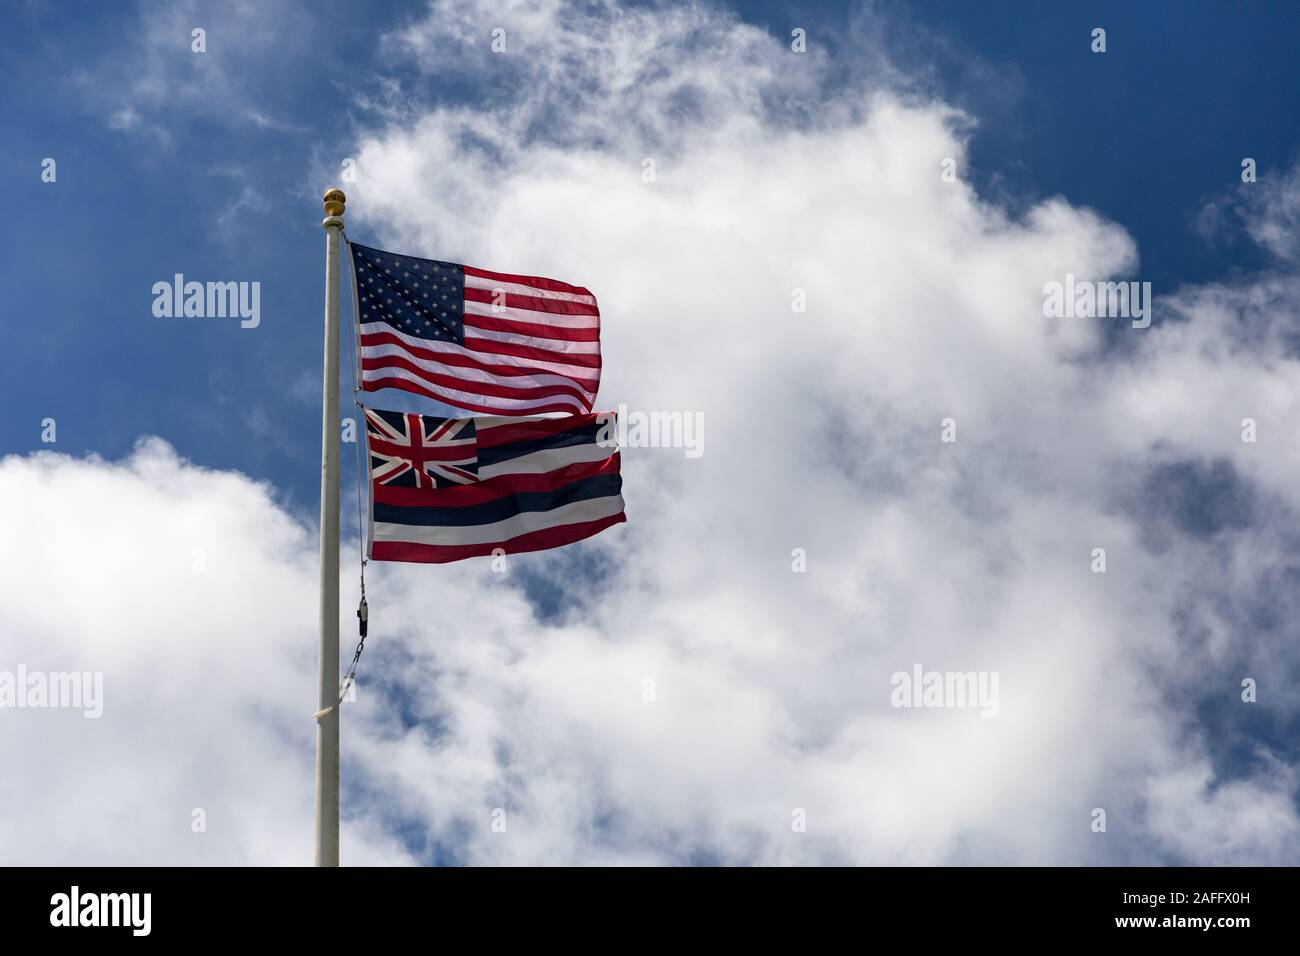 Fotos gratis : cielo, viento, país, línea, mástil, bandera, azul, colores,  Banderas, Naciones, Estados, Bandera de los estados unidos 5936x3816 - -  705423 - Imagenes gratis - PxHere